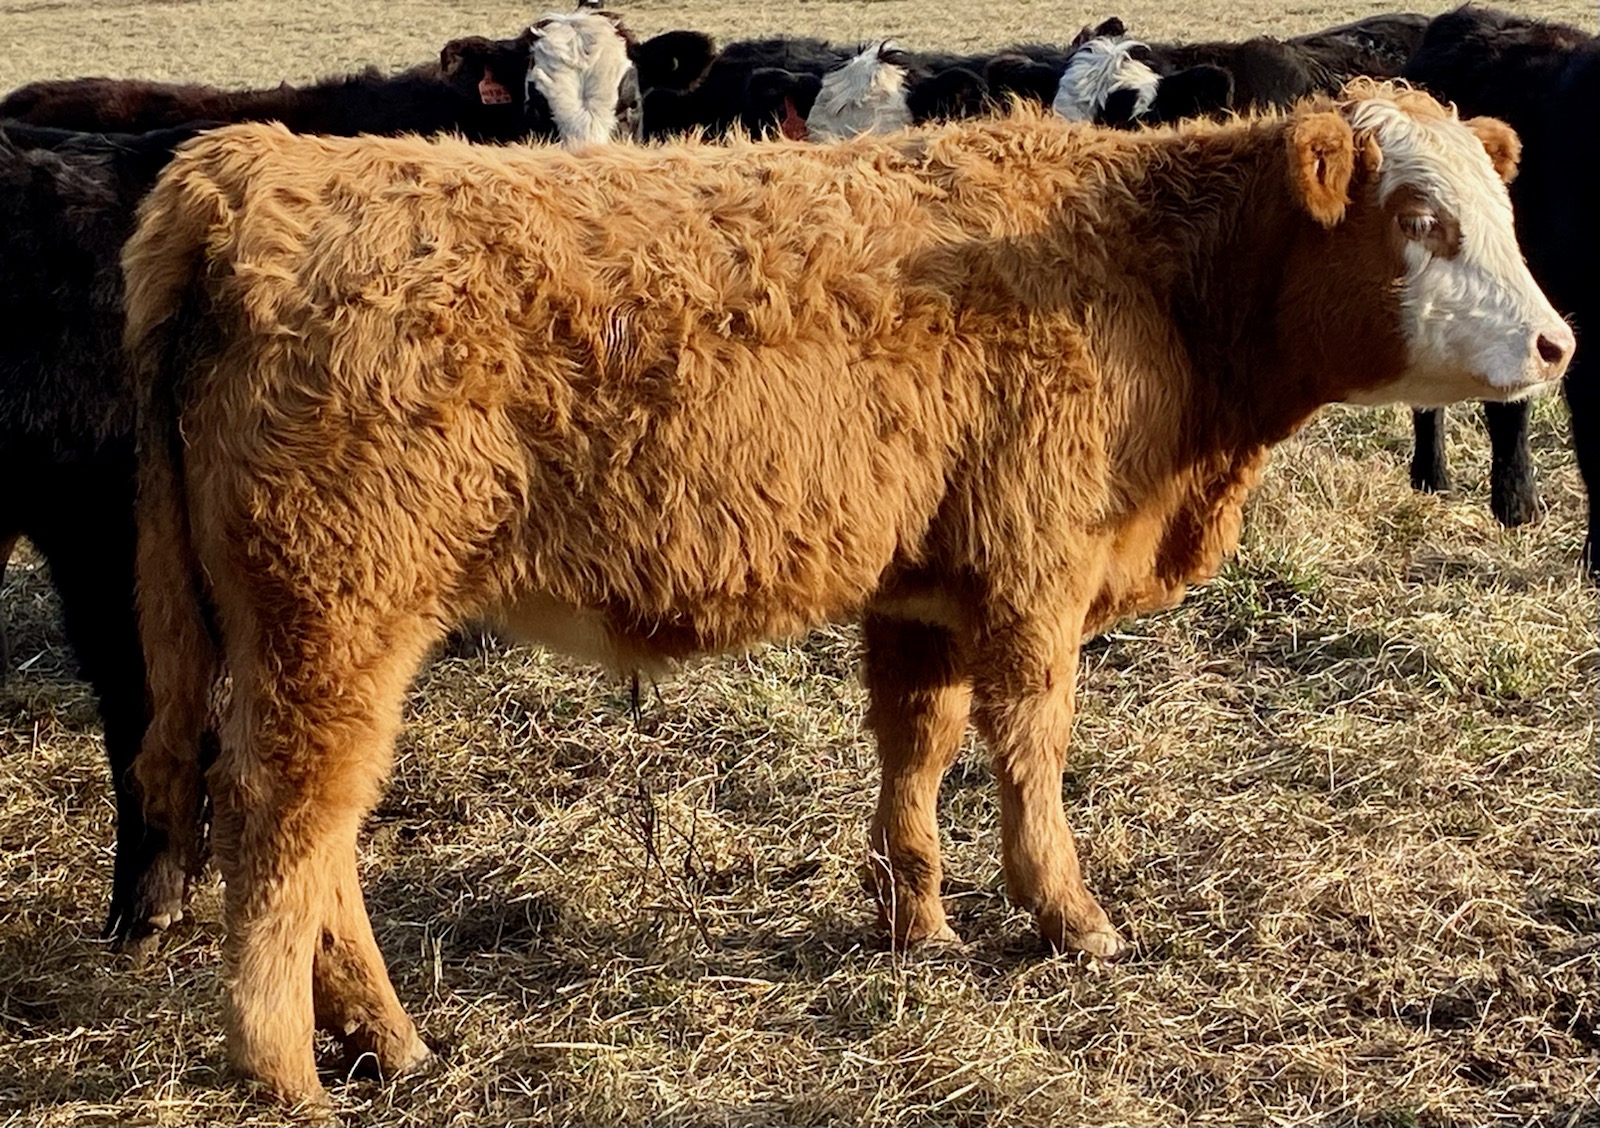 King a feeder bull calf at Simply Grazin' VA farm